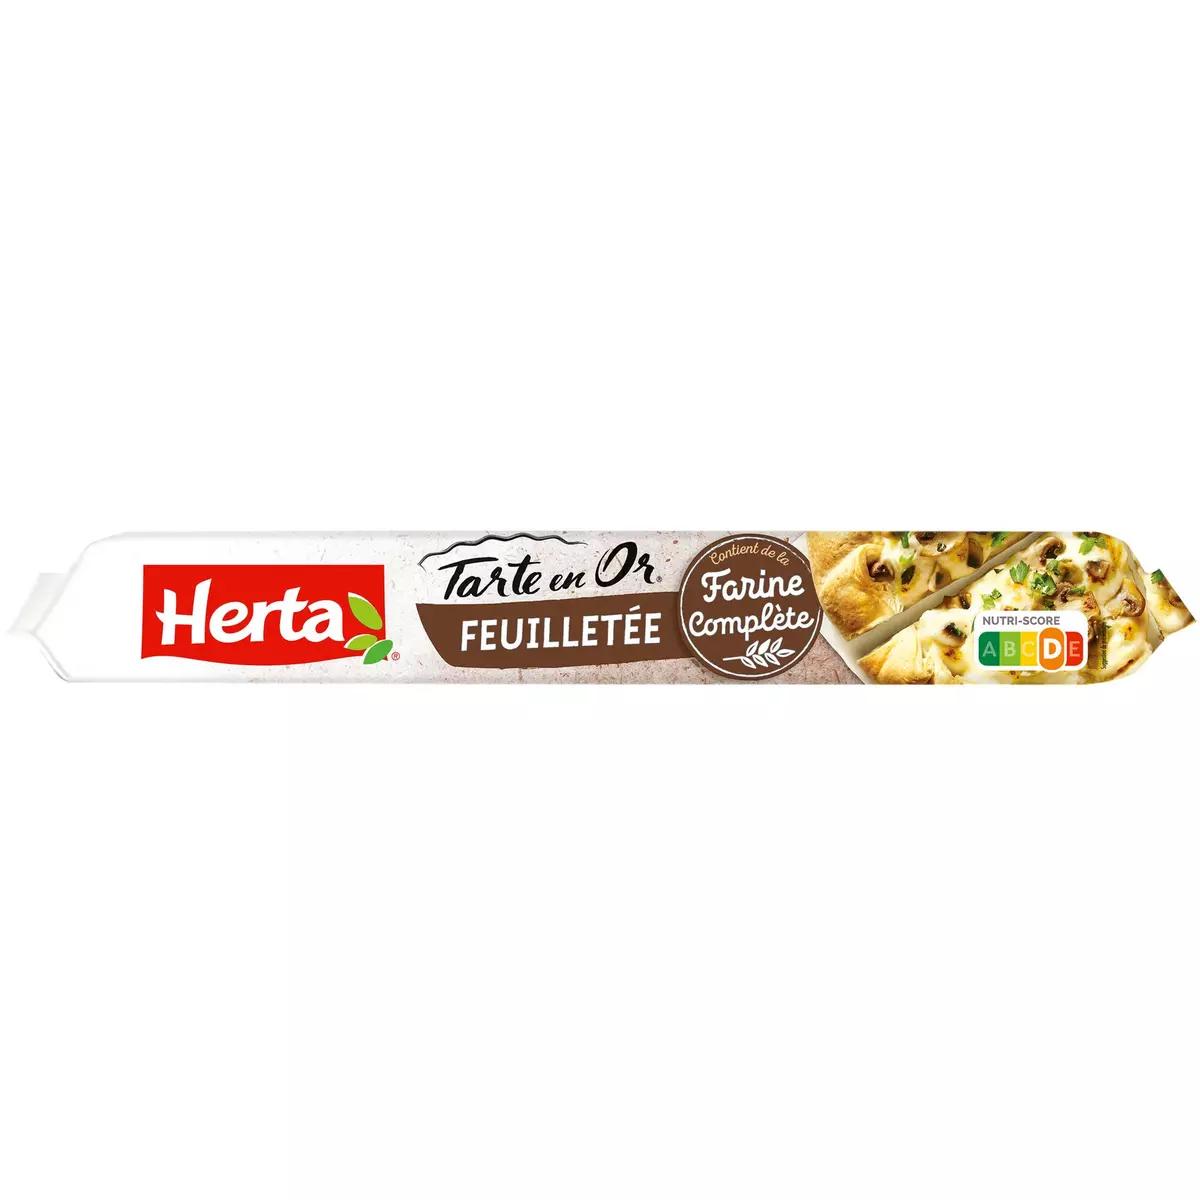 HERTA Tarte en Or pâte feuilletée complète 230g